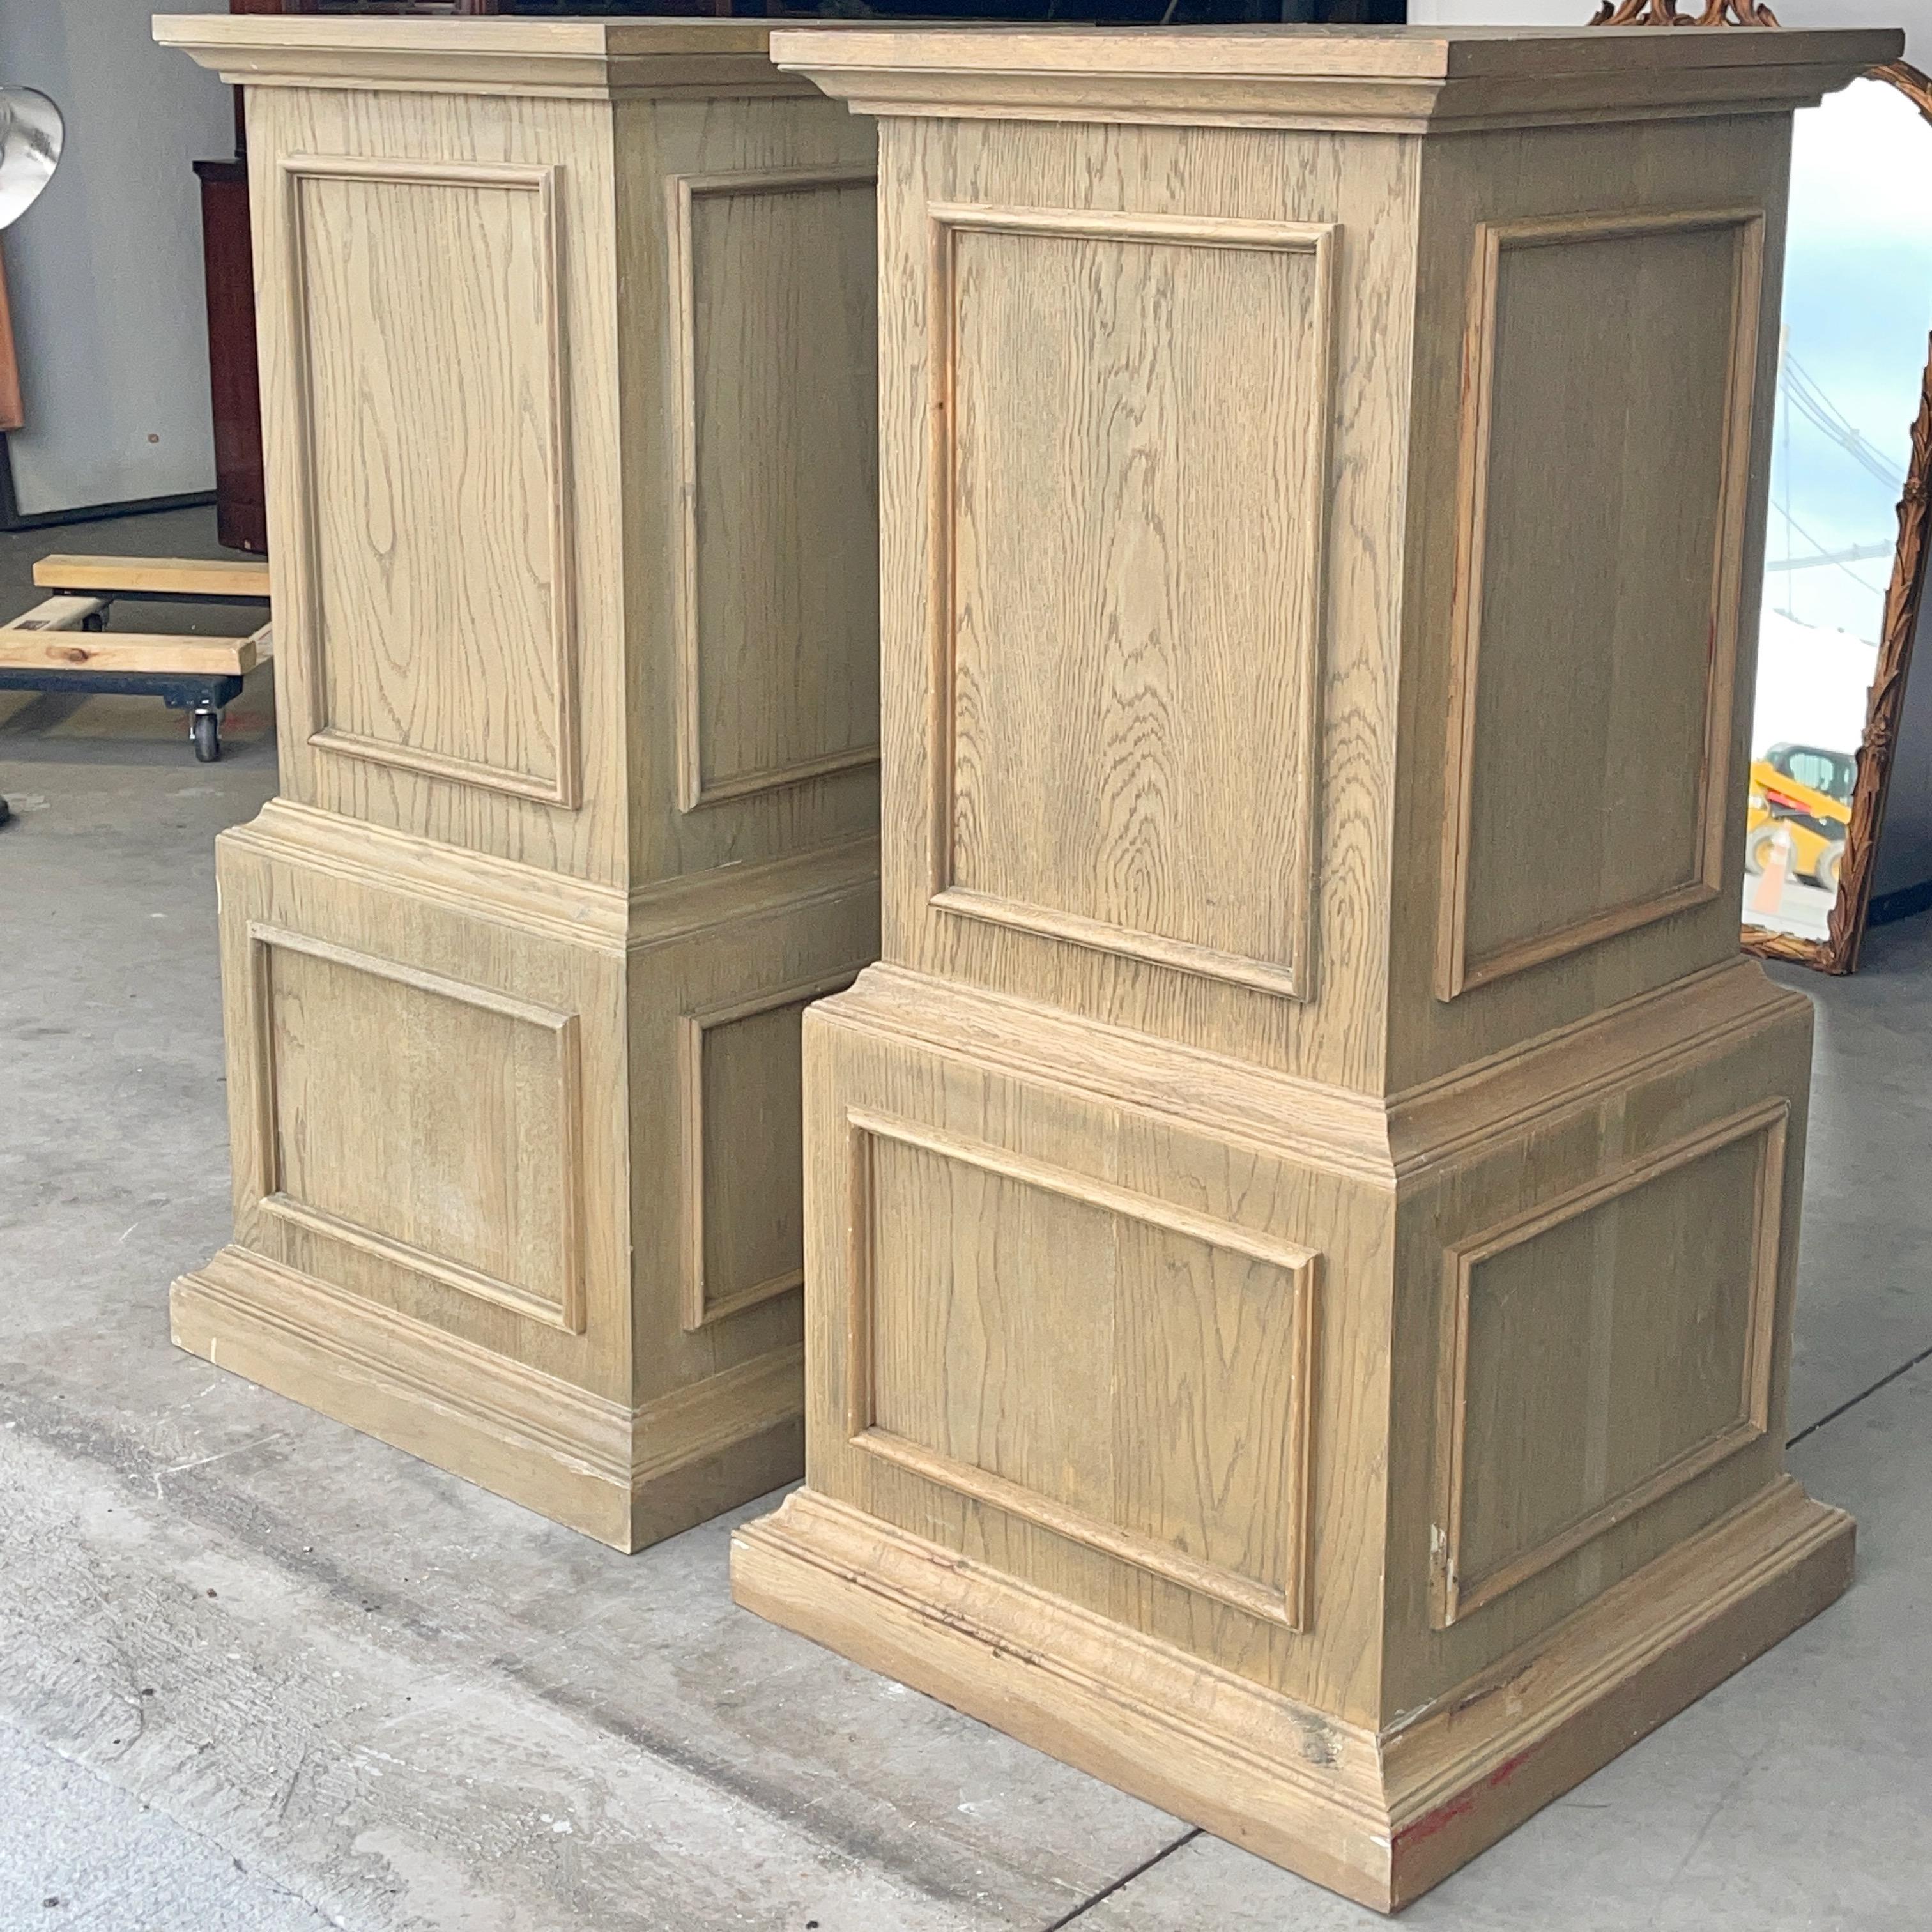 wooden pedestals